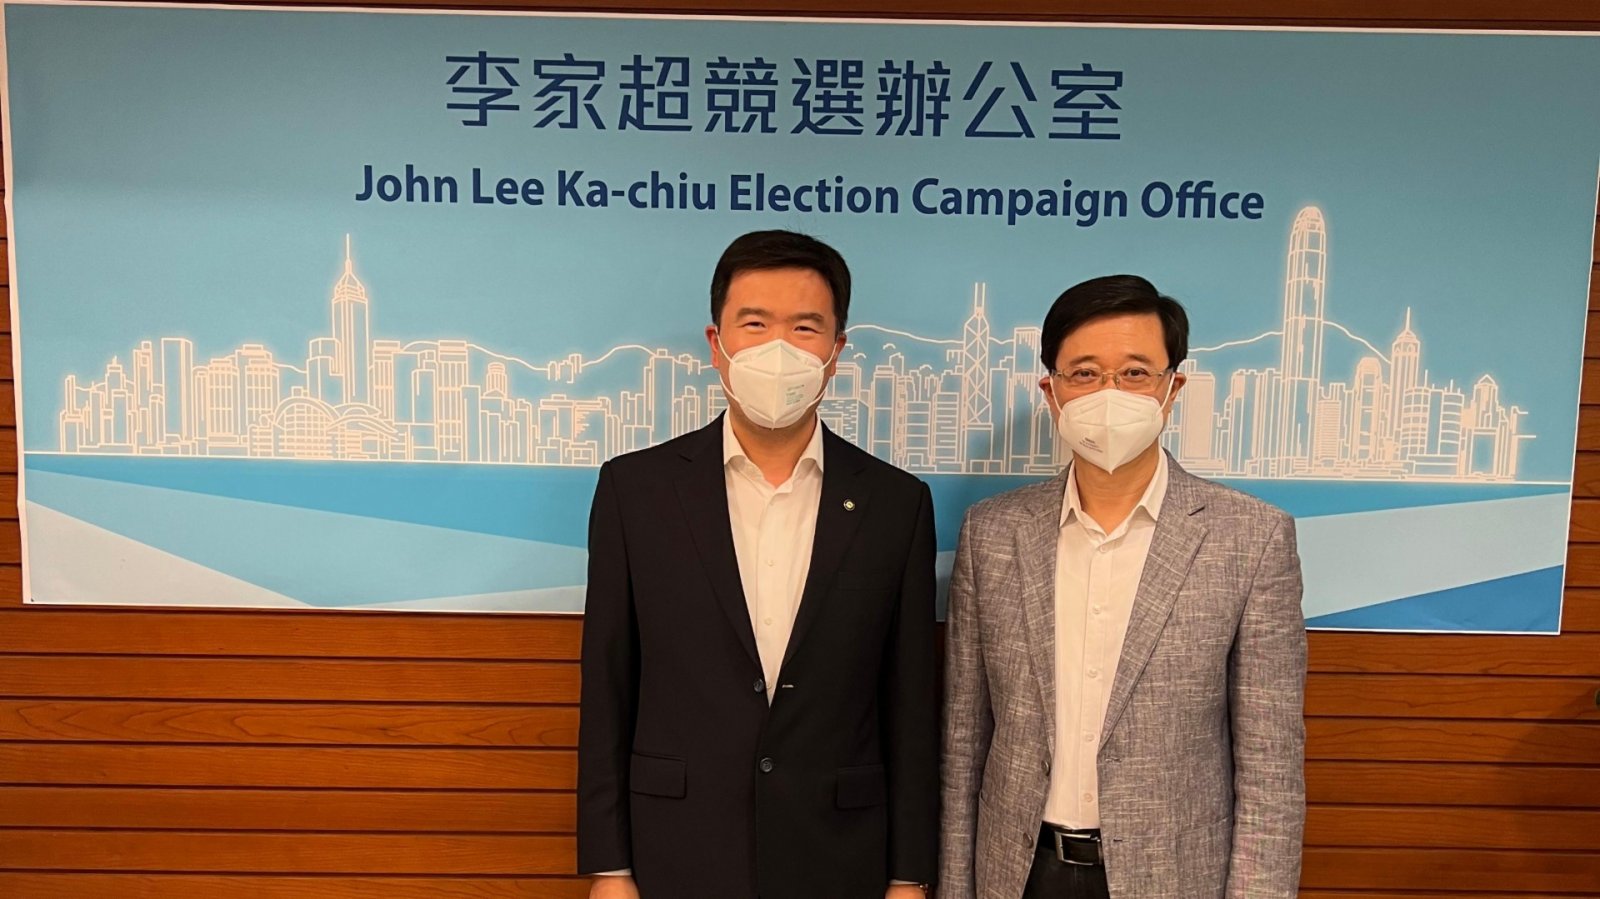 李家超昨日（9日）下午宣布參加香港特別行政區第六屆行政長官選舉，對於未来施政有三個主要方向，一是以結果為目標解決不同問題，二是全面提升香港競爭力，三是奠定香港發展的穩固基石。選舉委員會委員、立法會議員嚴剛今日（10日）接受點新聞記者訪問時表示，李家超先生發表的參選宣言給他留下深刻印象，未來施政的三個主要方向目標清晰。